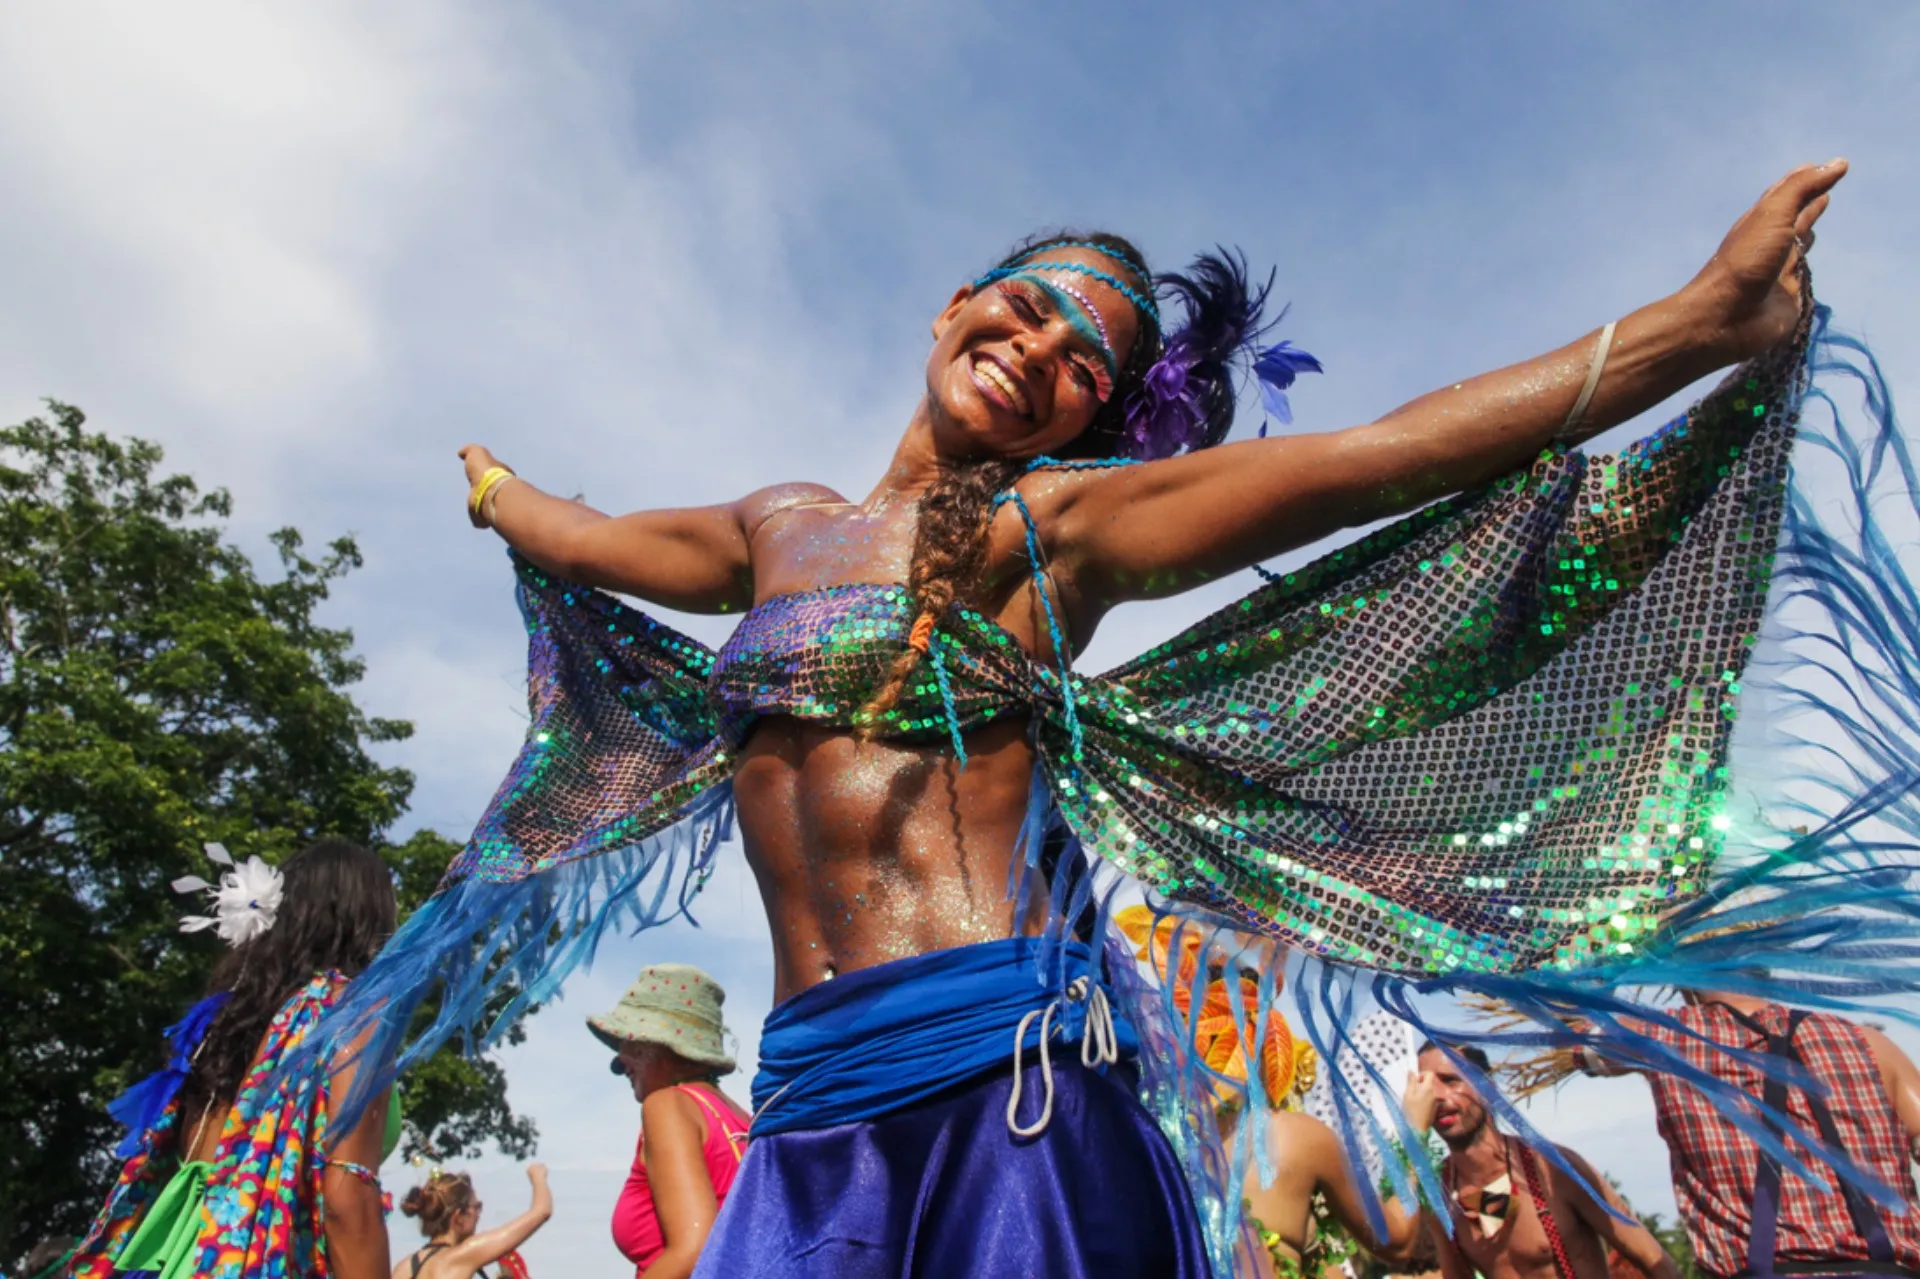 Blocos de Carnaval no Rio de Janeiro – 10, 11 e 12/02 - Fundação Mudes